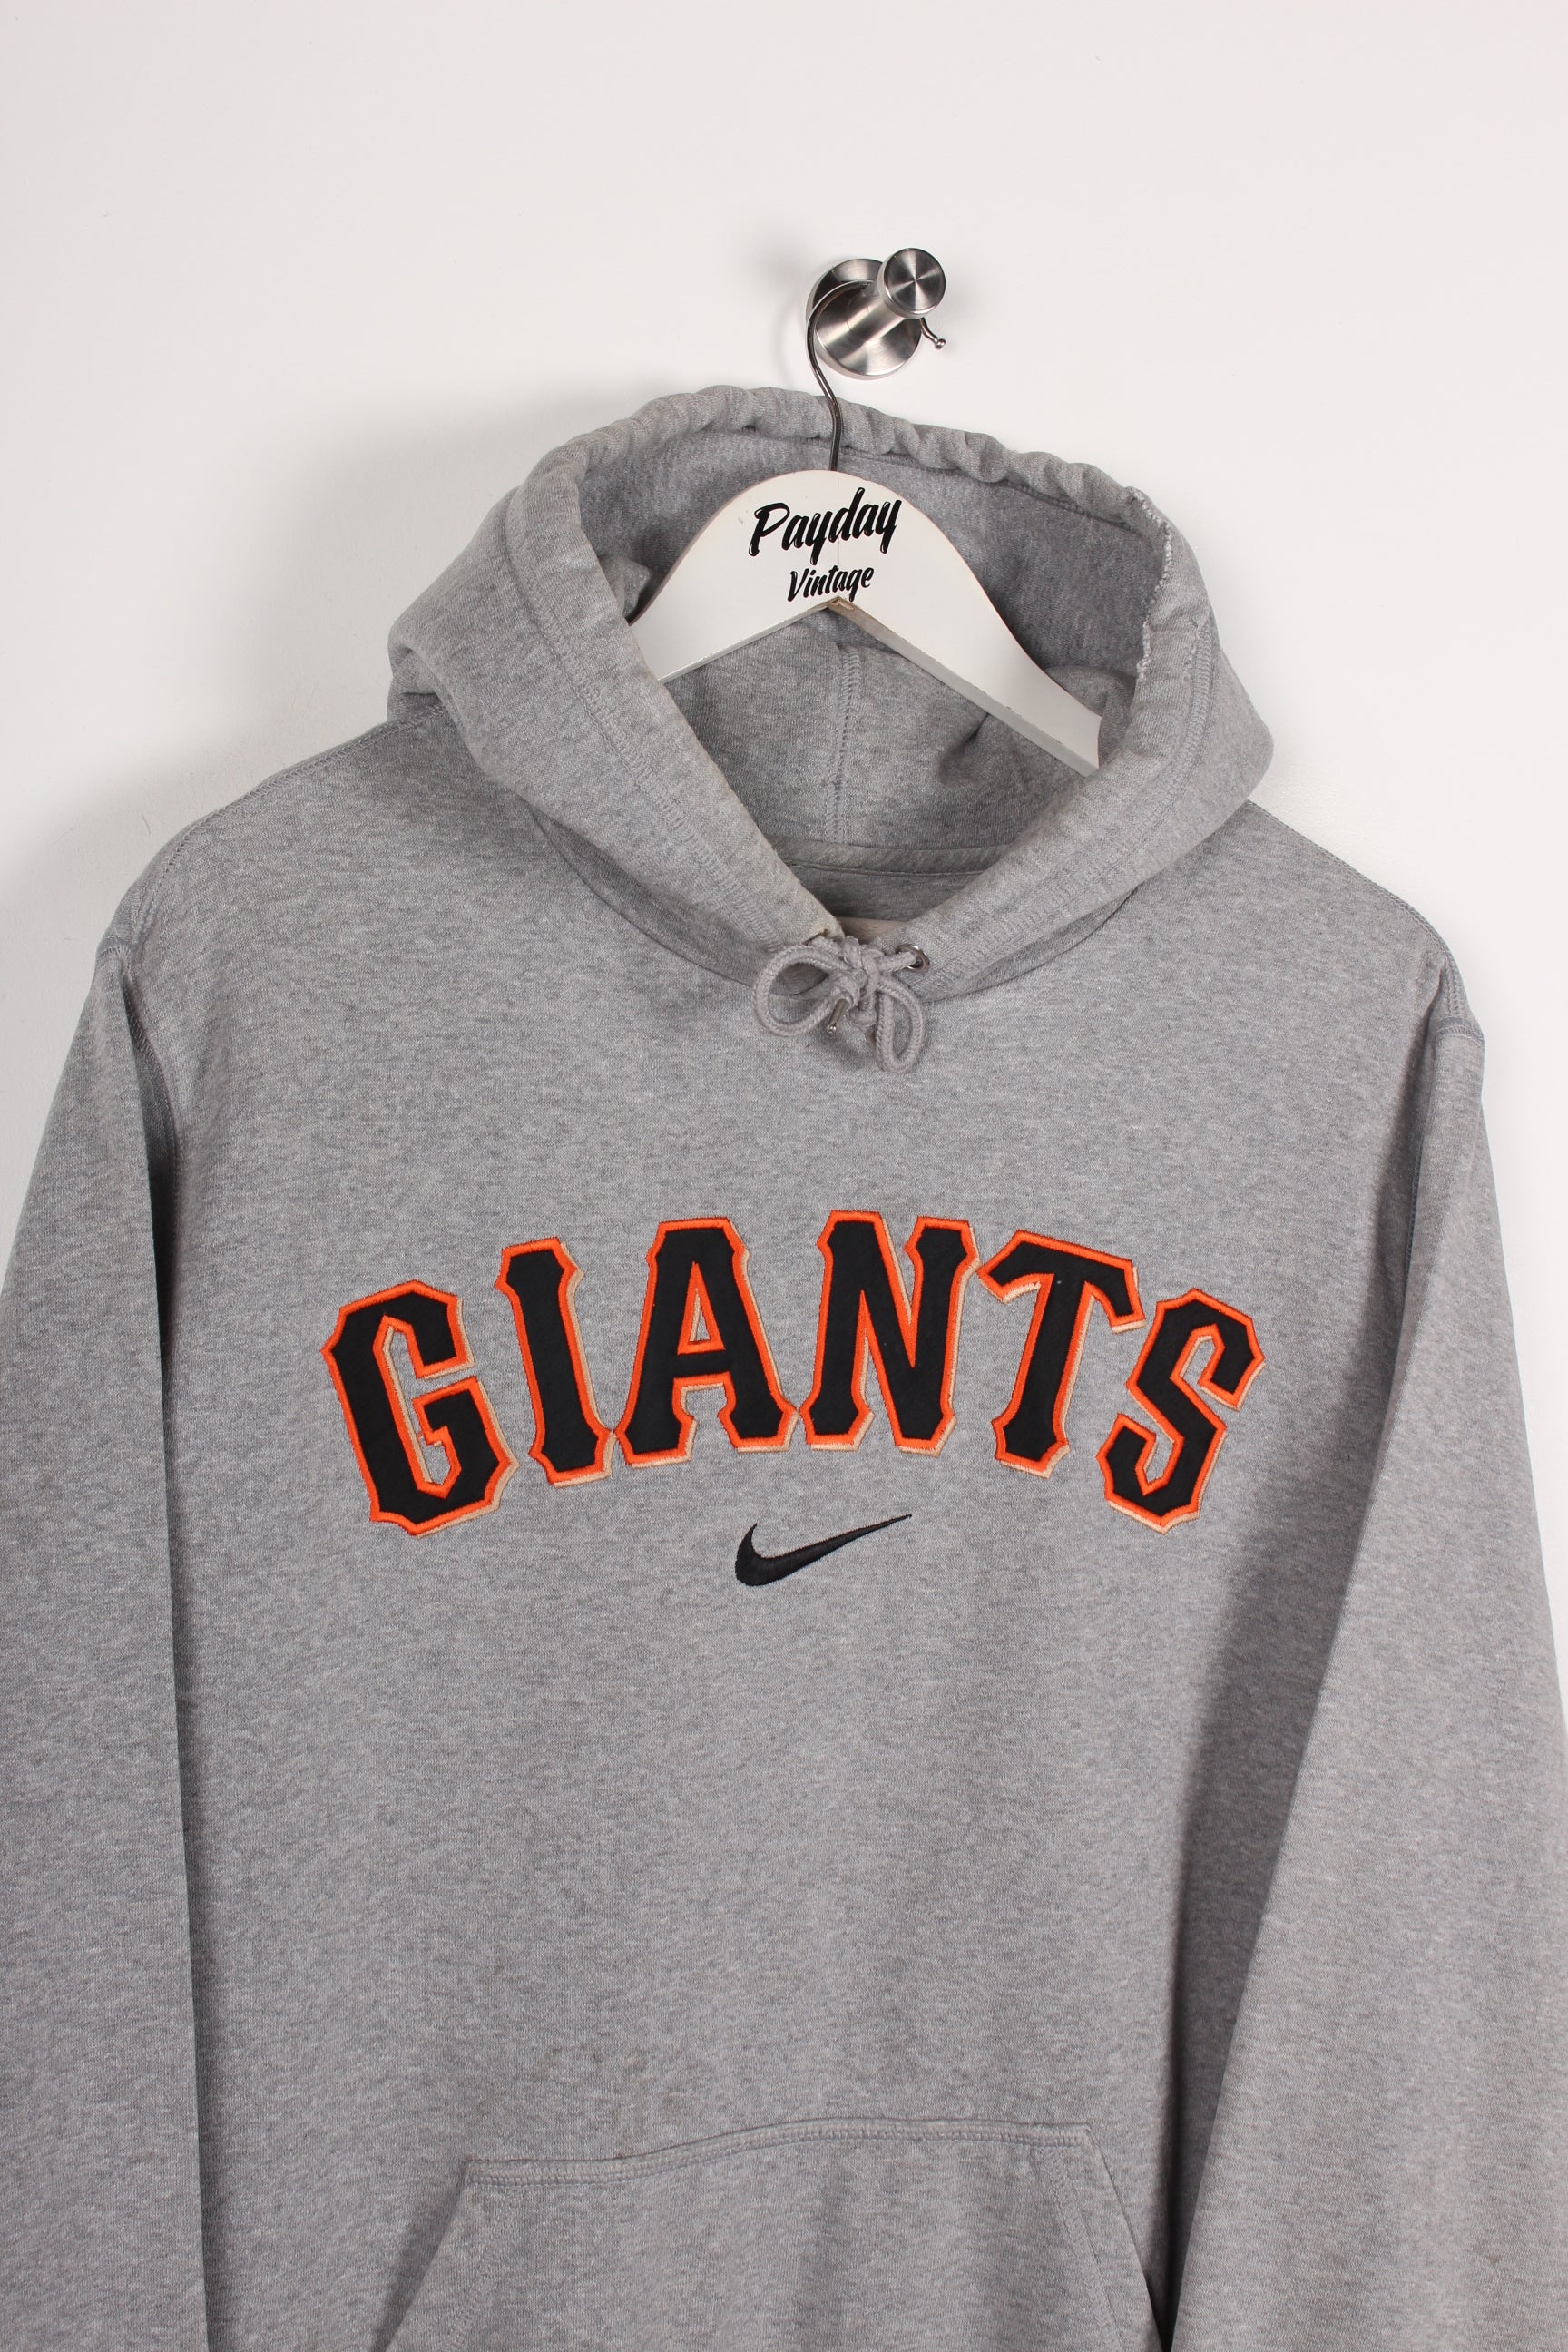 Nike Giants Hoodie Grey XL – Payday Vintage